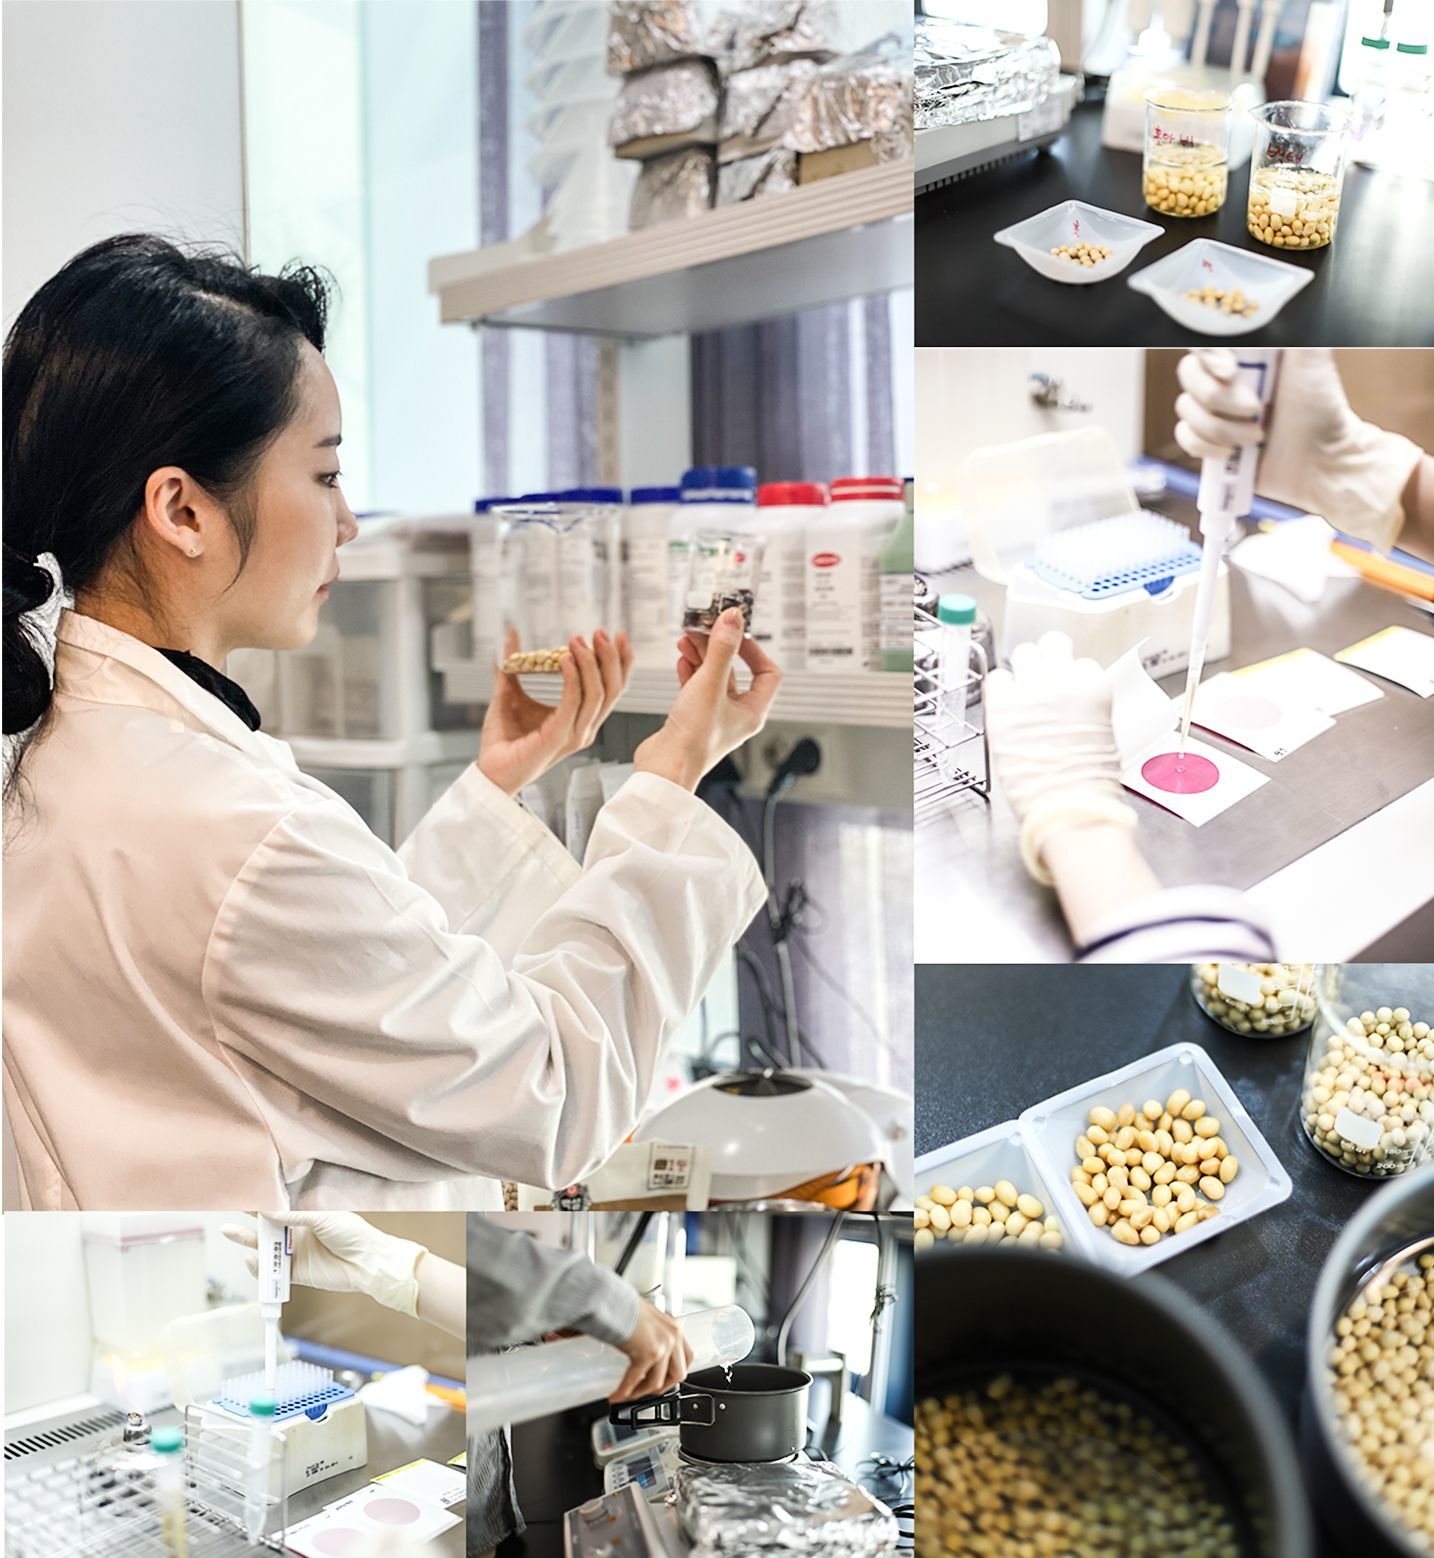 발효 전문 기업 소미노의 연구 모습